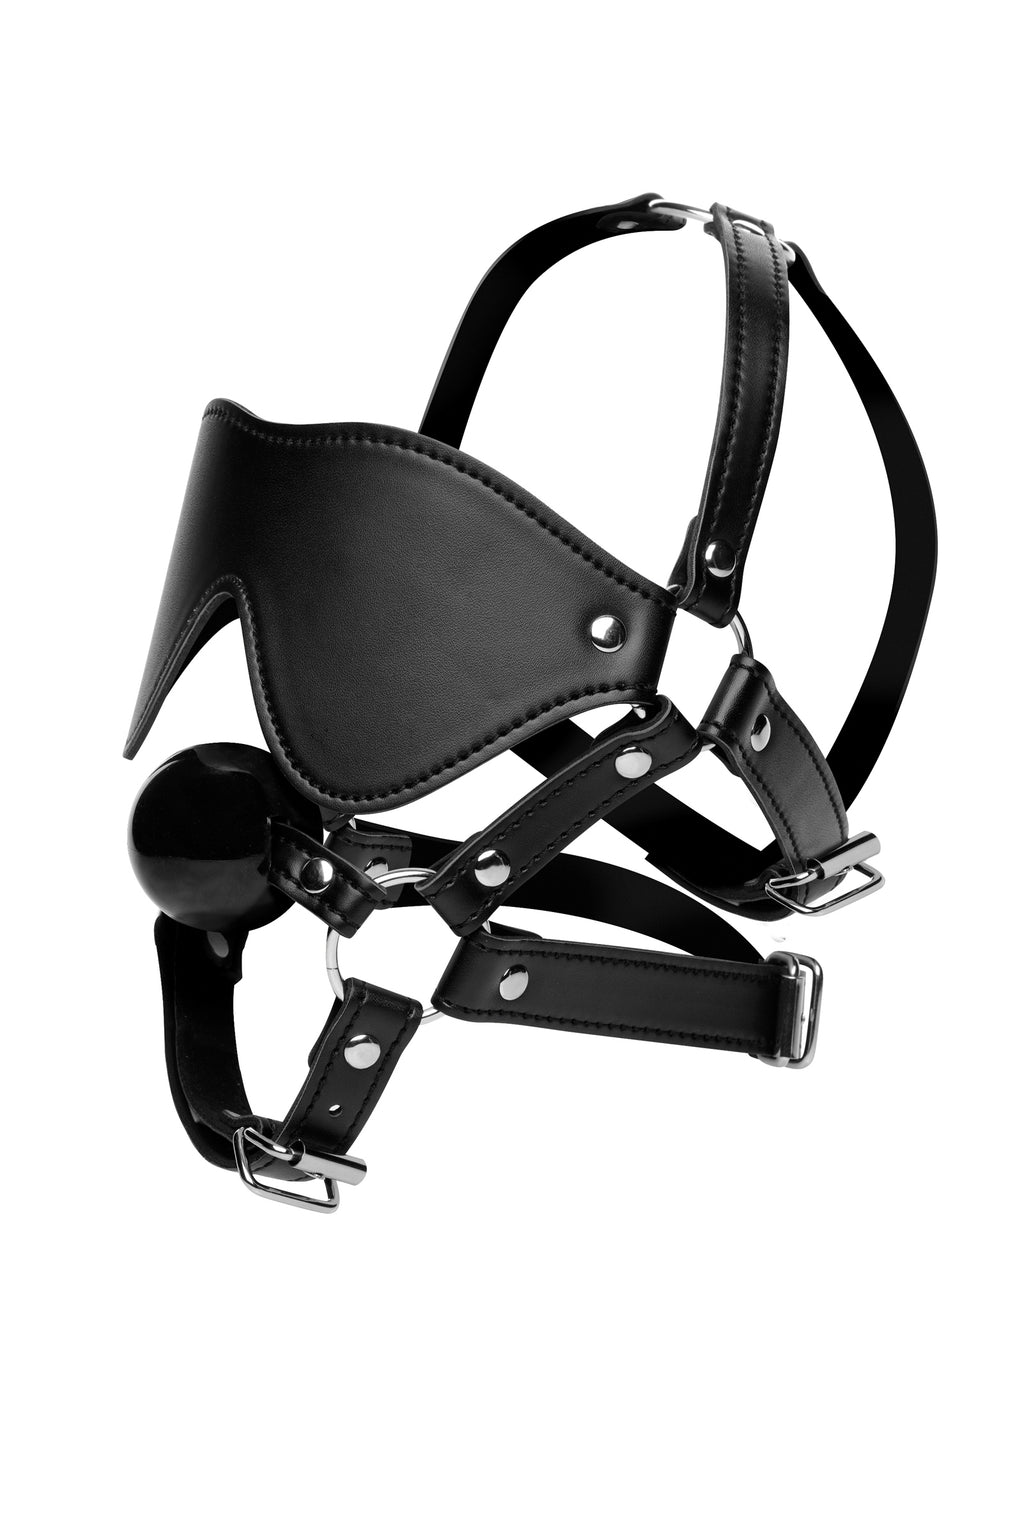 Blindfold Harness + Ball Gag STR-AE909